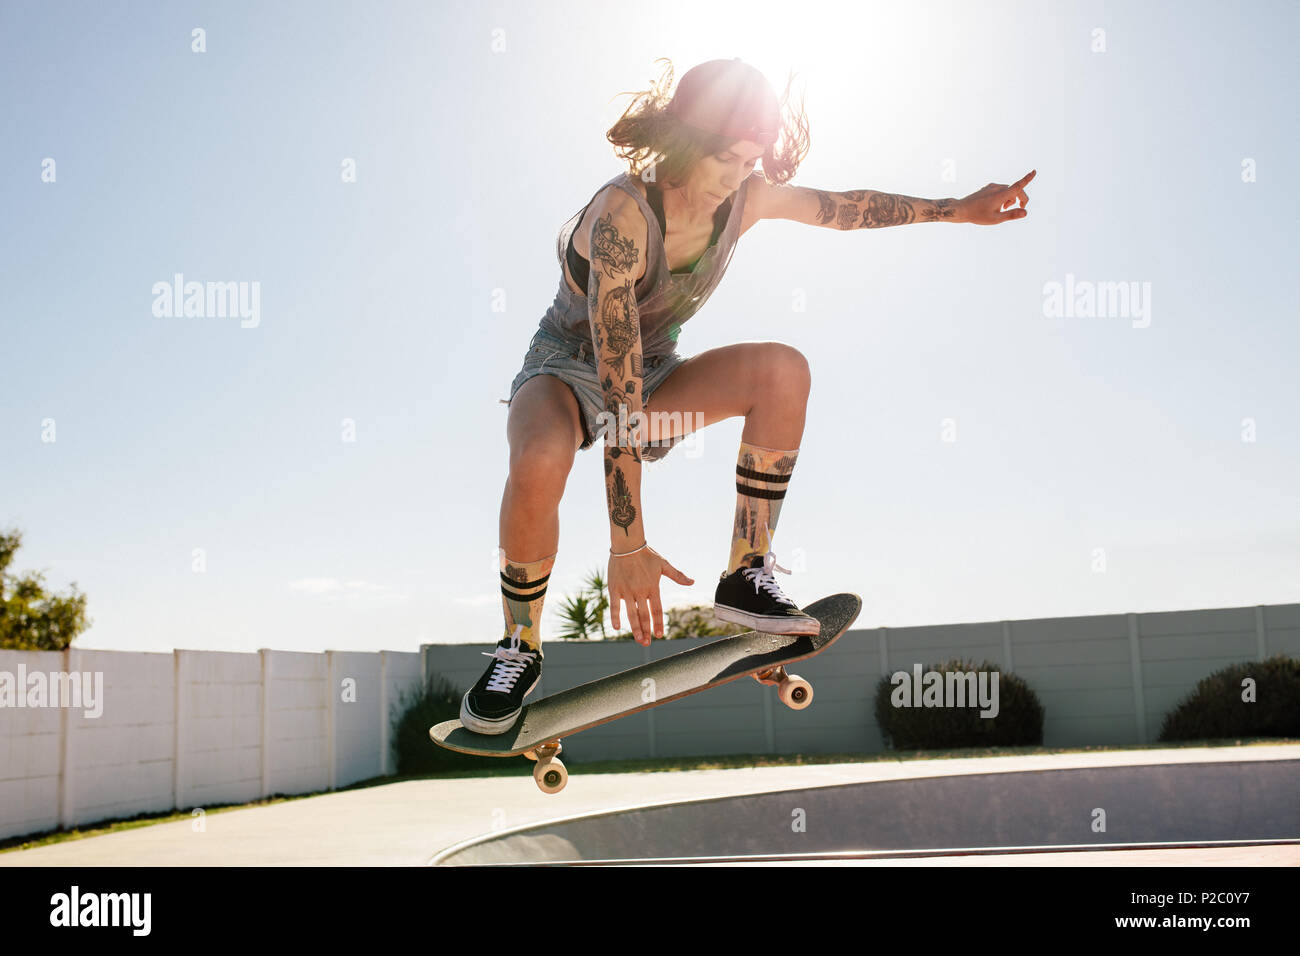 Skater femmina praticare lo skateboard a skate park. Le donne facendo ollie su skateboard. Foto Stock